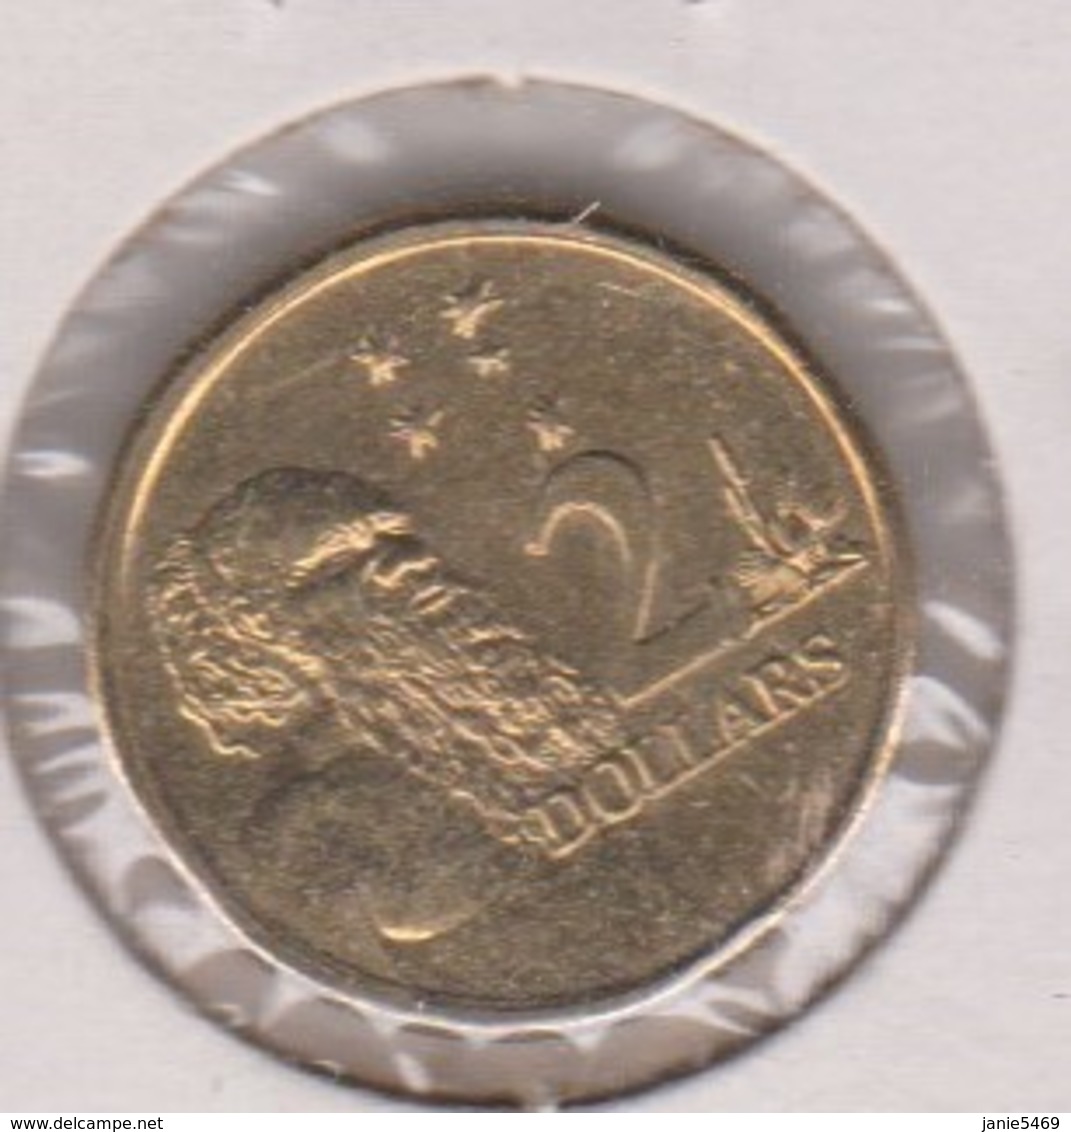 Australia 2016 Queen Elizabeth II $ 2.00 Coin - 2 Dollars